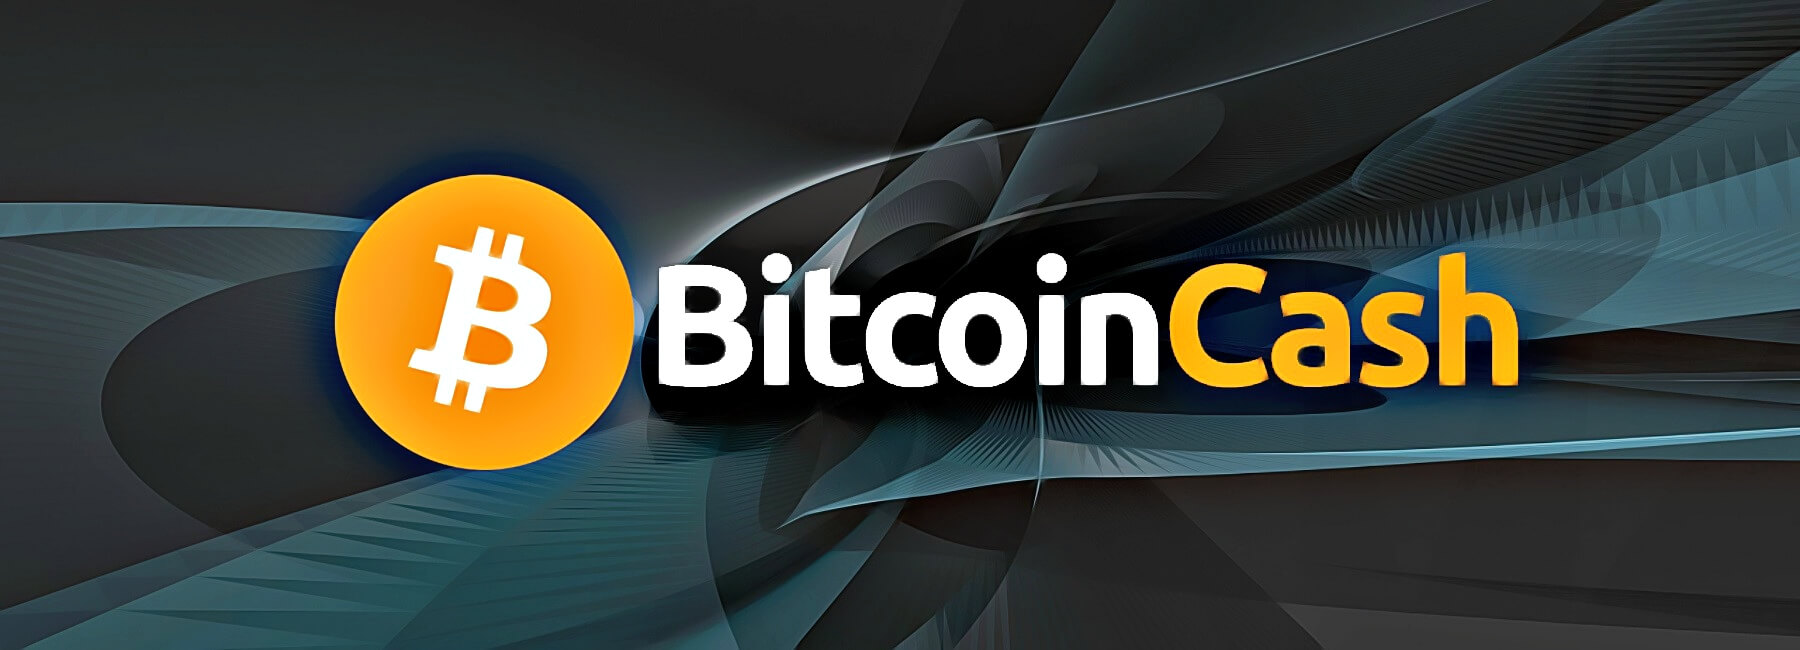 Bitcoin cash holder receive airdrop btcp cme bitcoin future